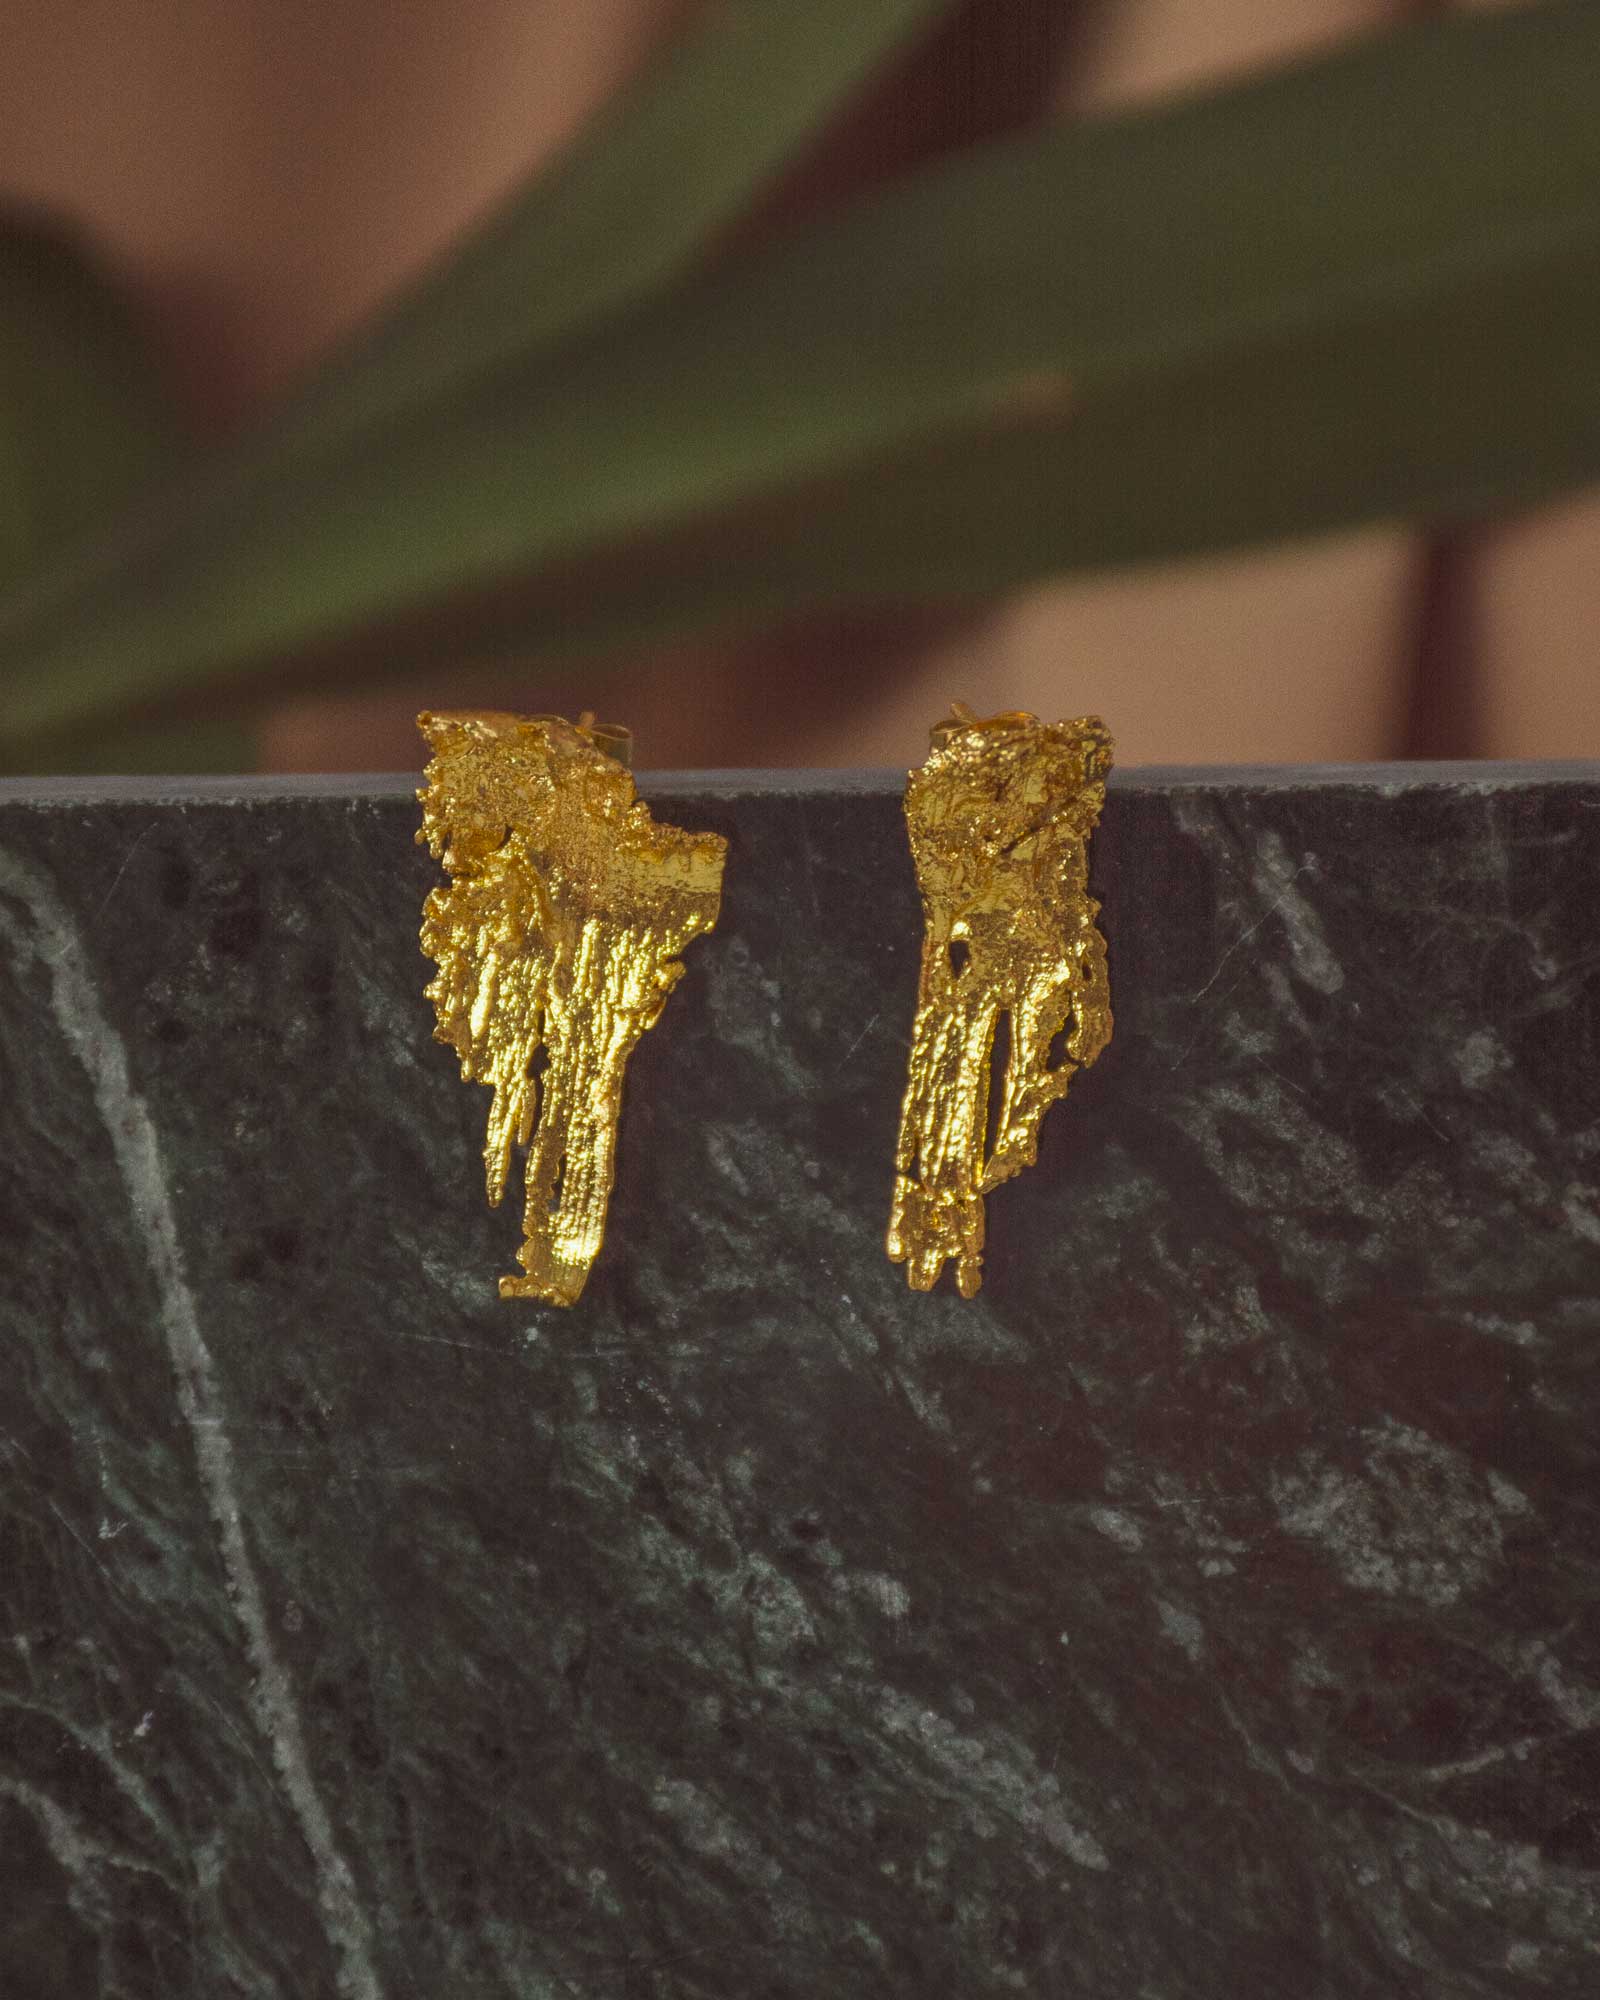 Aretes Topo Corteza en bronce bañado en oro de 24k, mostrando la textura única de la corteza de pino recolectada en Bogotá